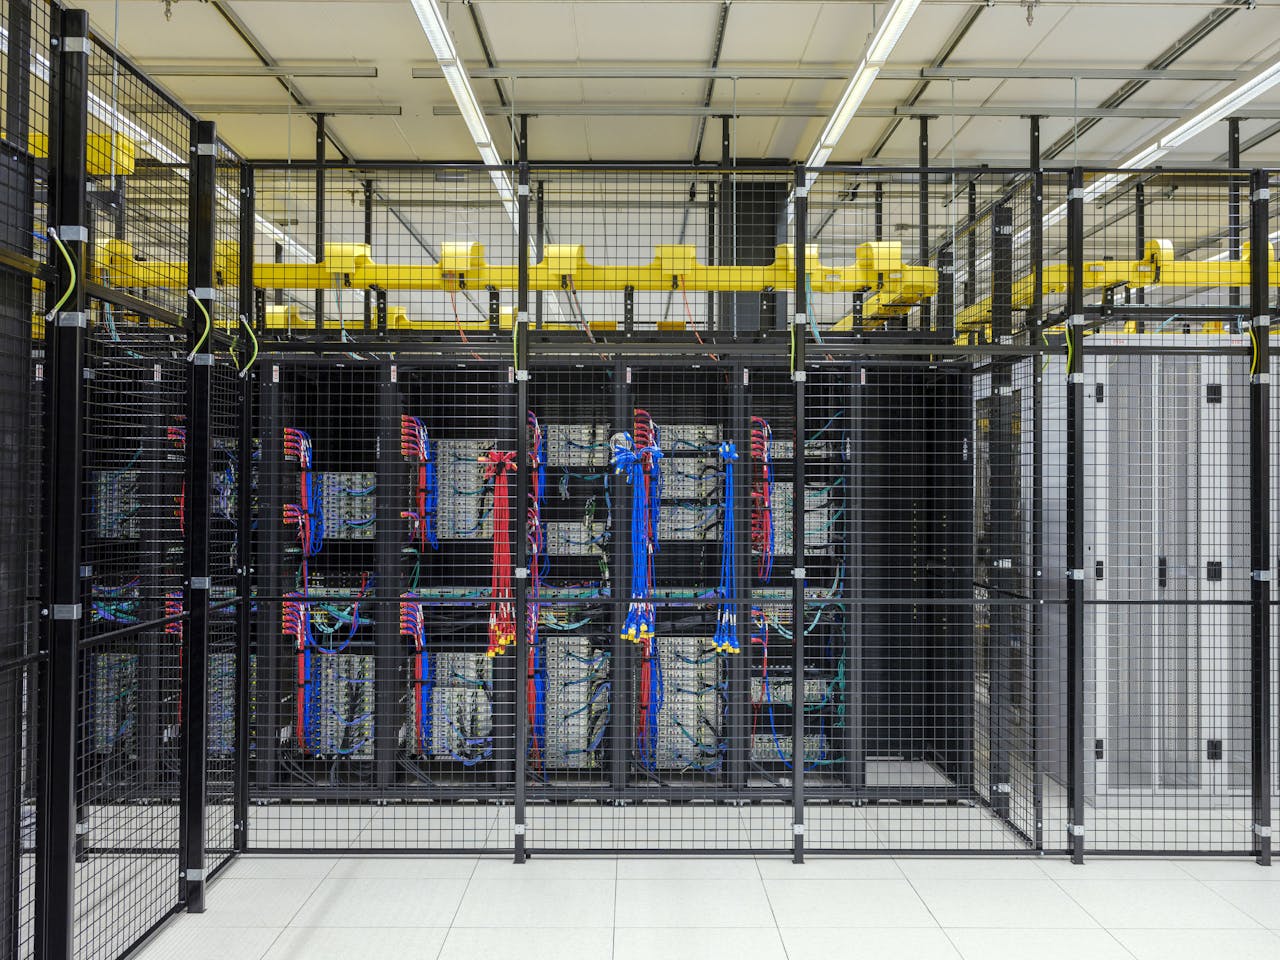 Datacenter van Equinix in Amsterdam. De serverkasten hier verbruiken veel energie.